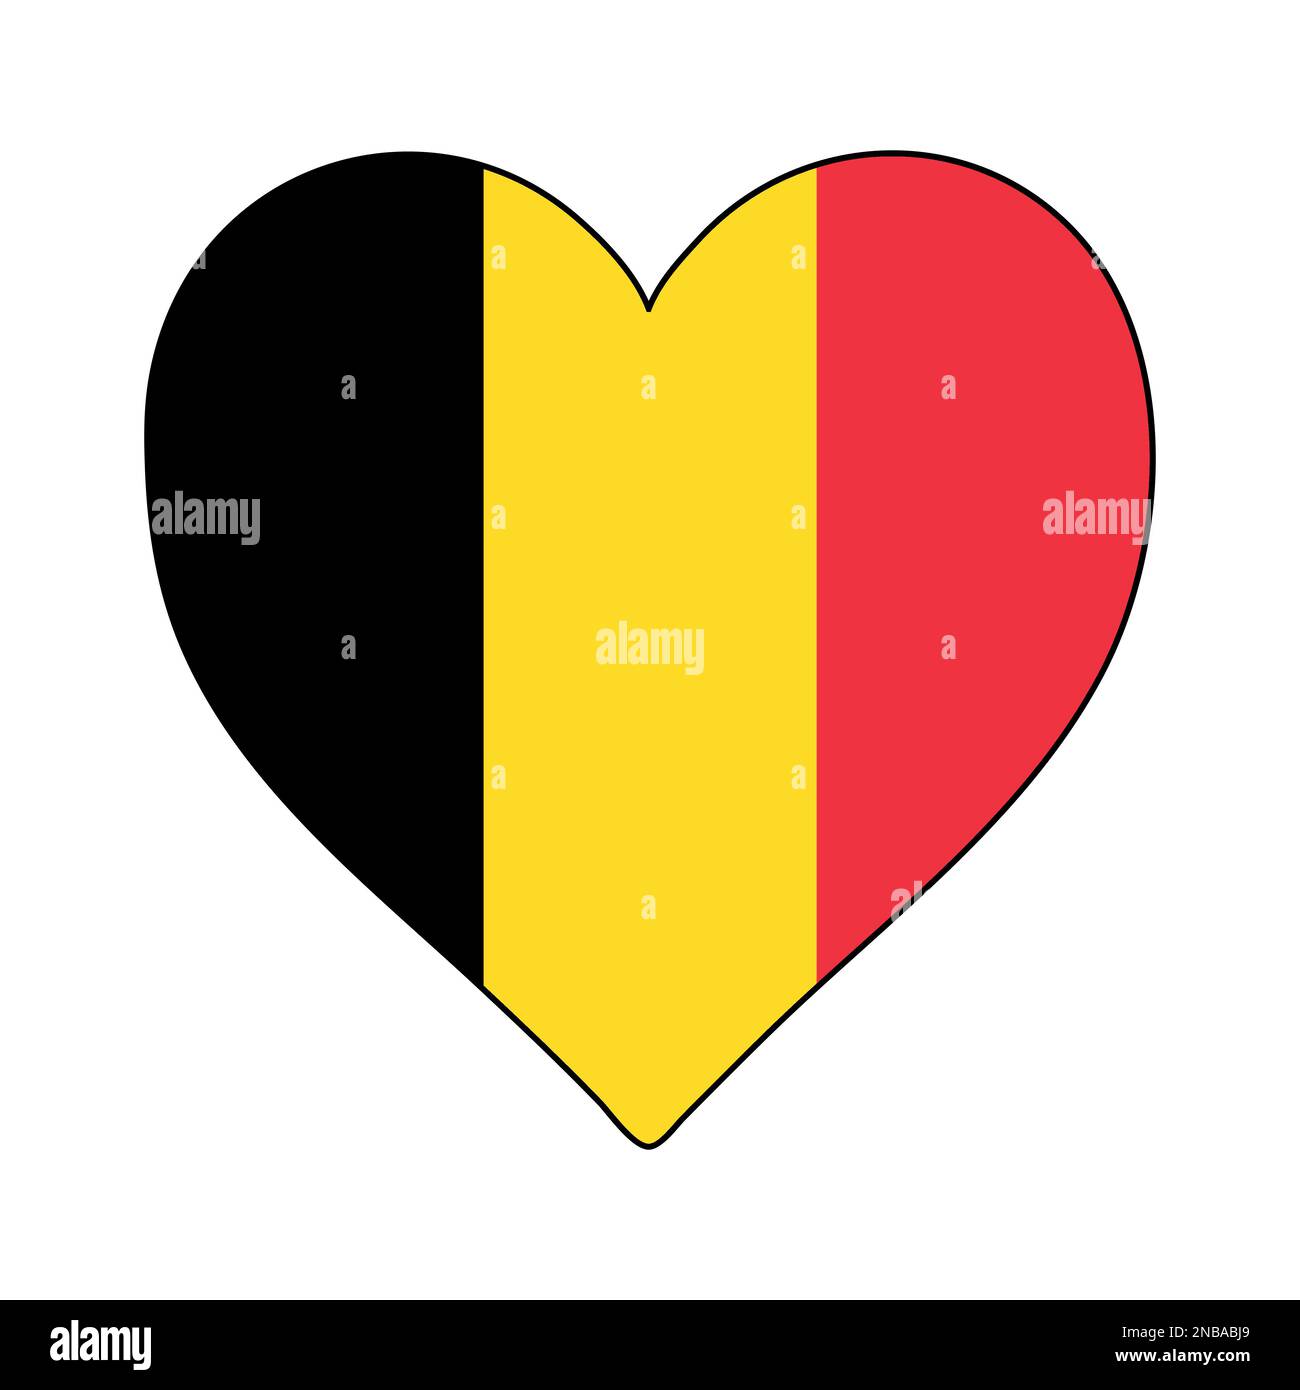 Belgium Heart Shape Flag. Love Belgium. Visit Belgium. Western Europe. Europe. European Union. Vector Illustration Graphic Design. Stock Vector